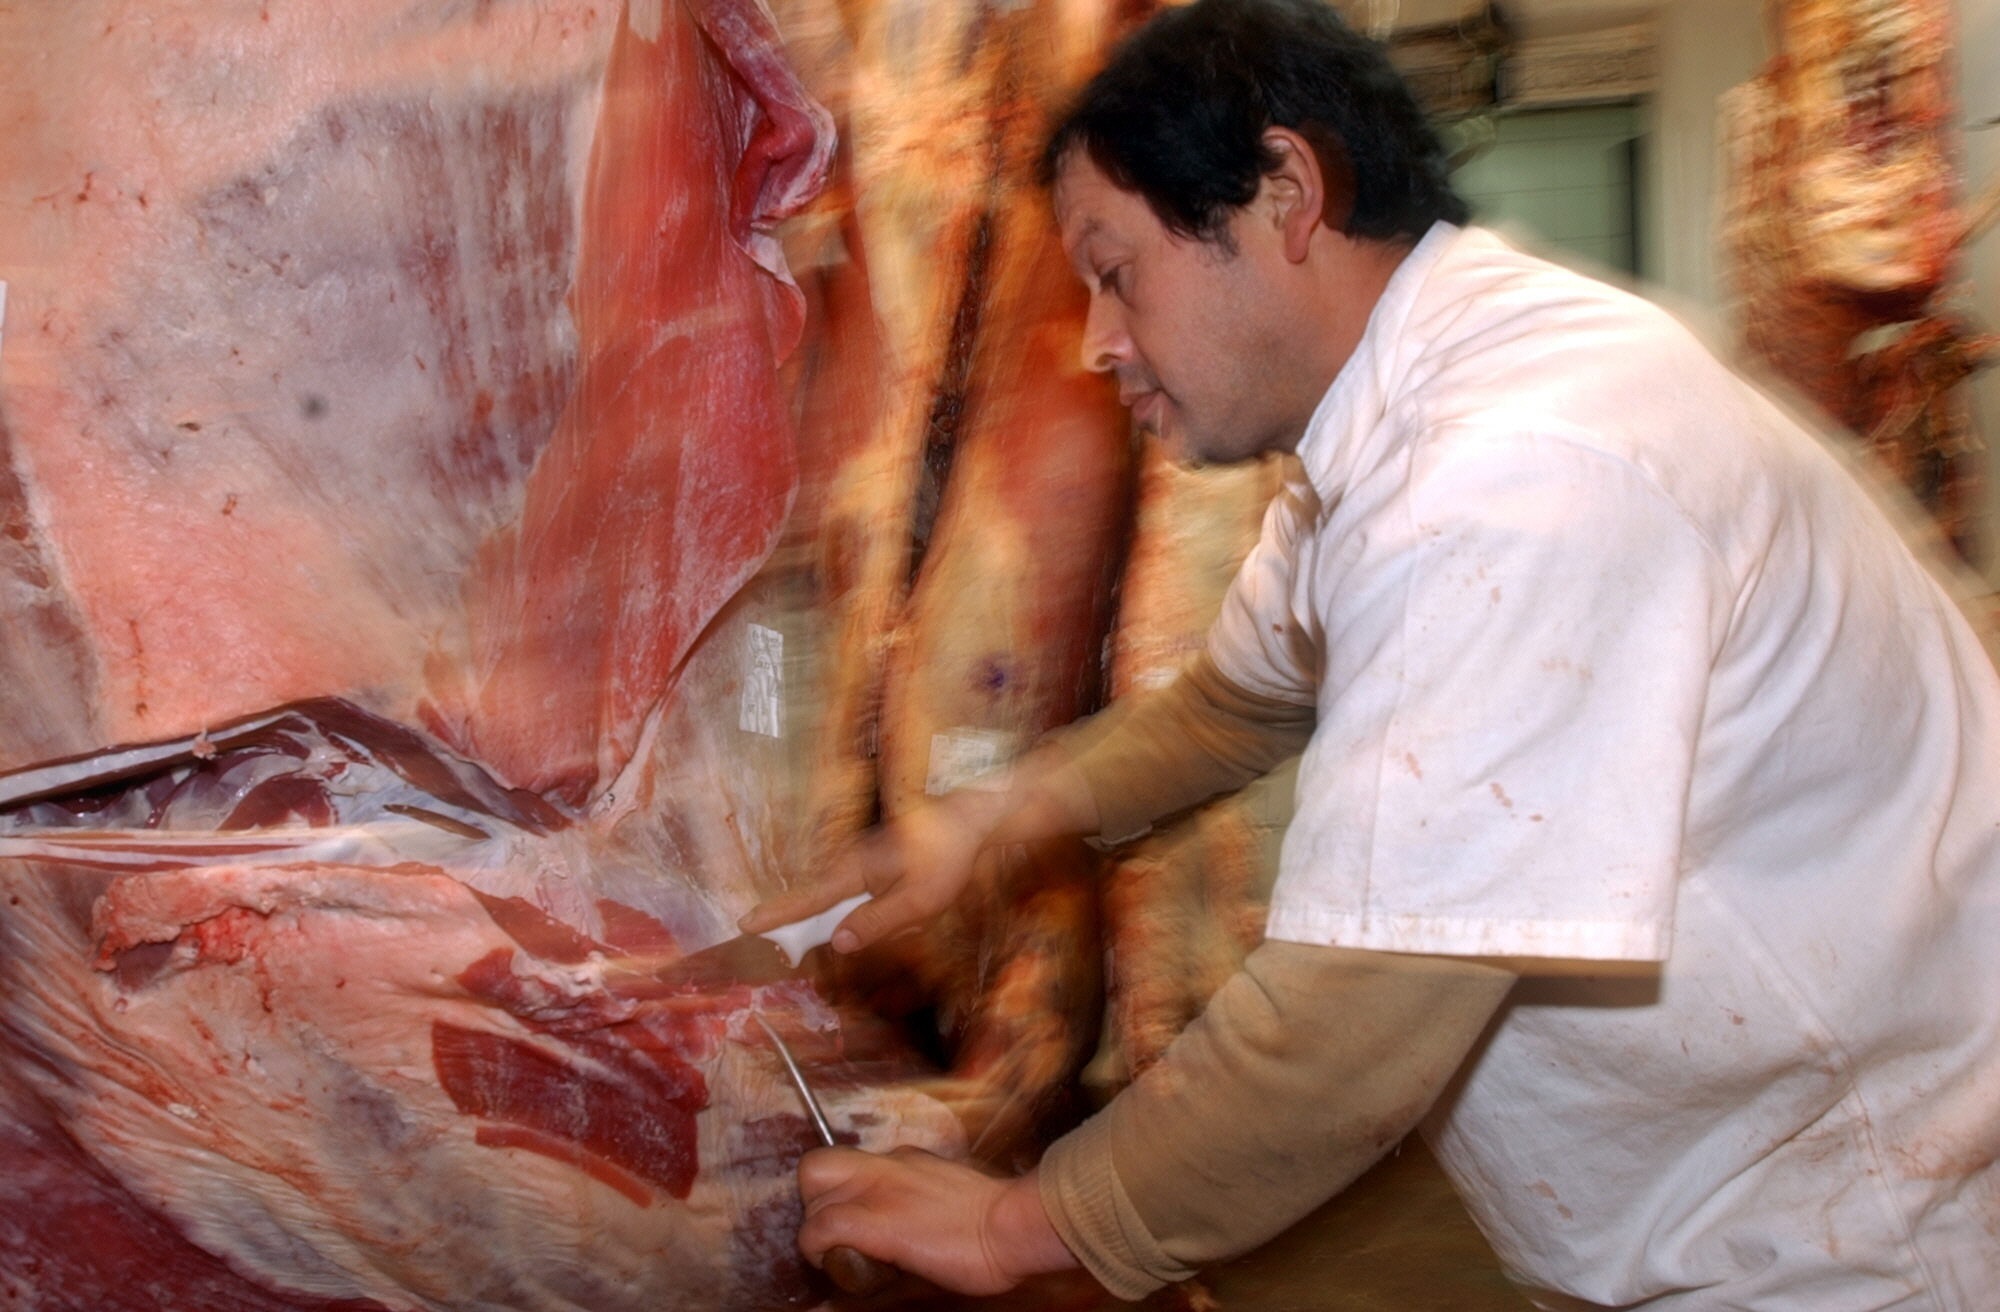 Un trabajador corta carne vacuna en una cámara frigorífica. EFE/Cézaro De Luca/Archivo
